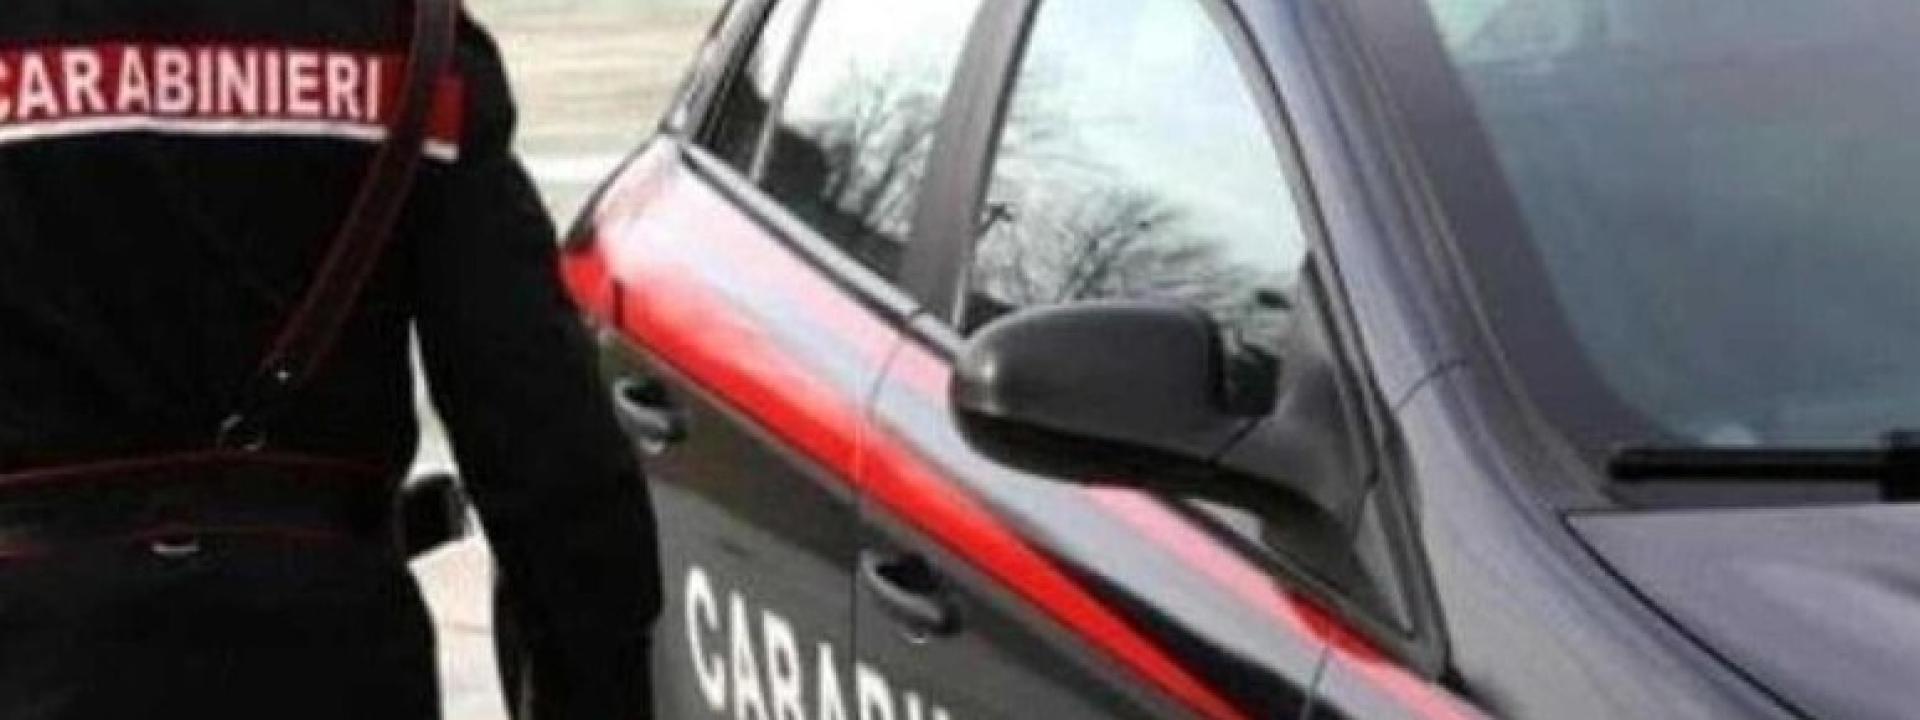 Marche - Macerata, nigeriano 40enne trovato con mezzo chilo di eroina in casa